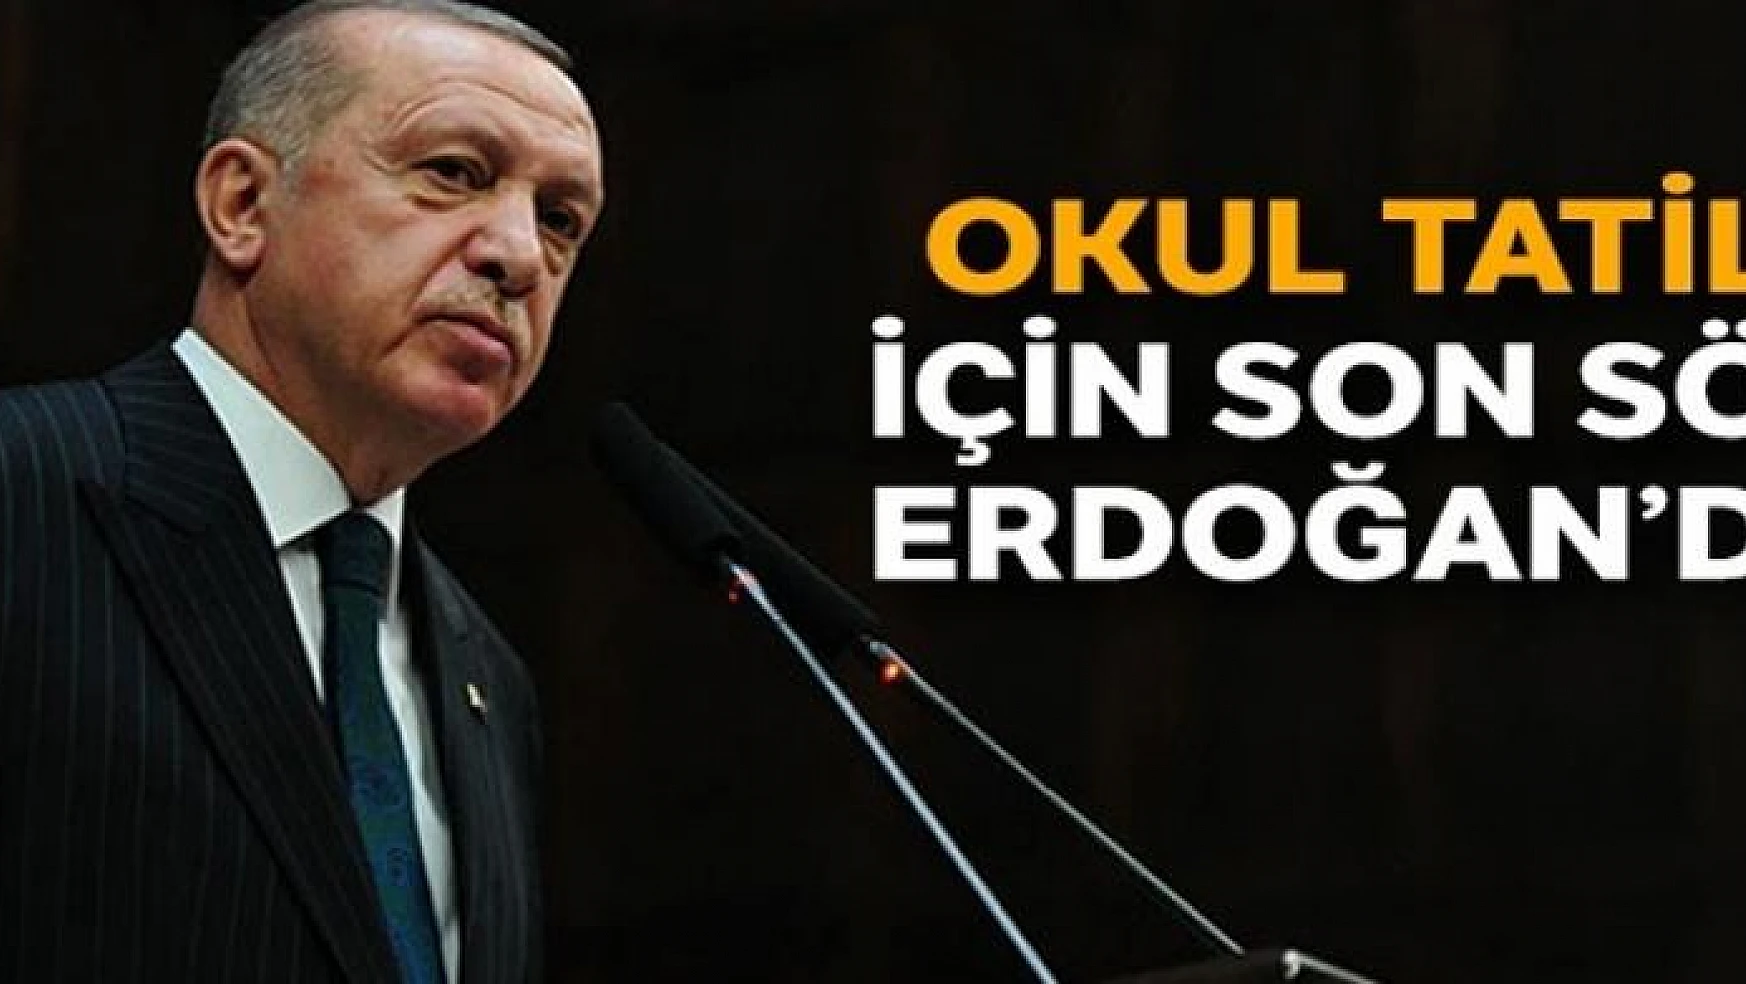 Okul tatili için son söz Erdoğan'da